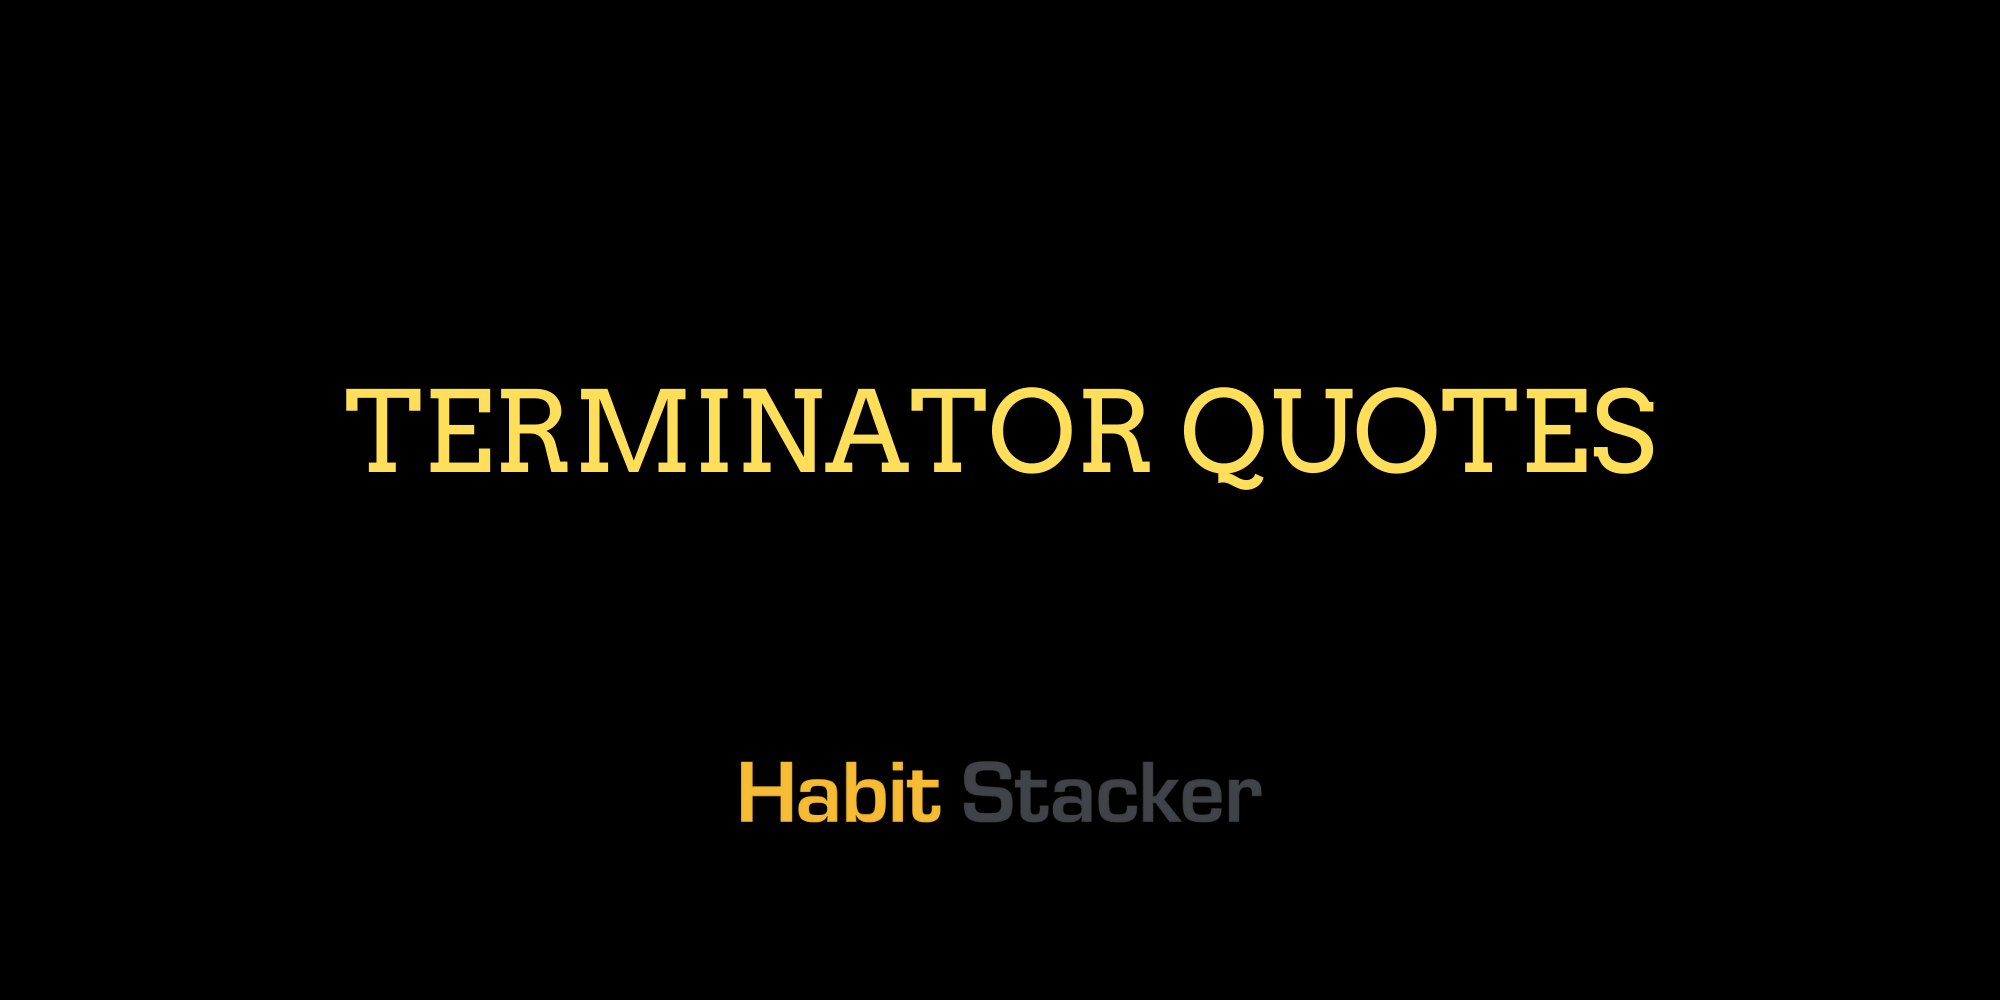 the terminator quotes